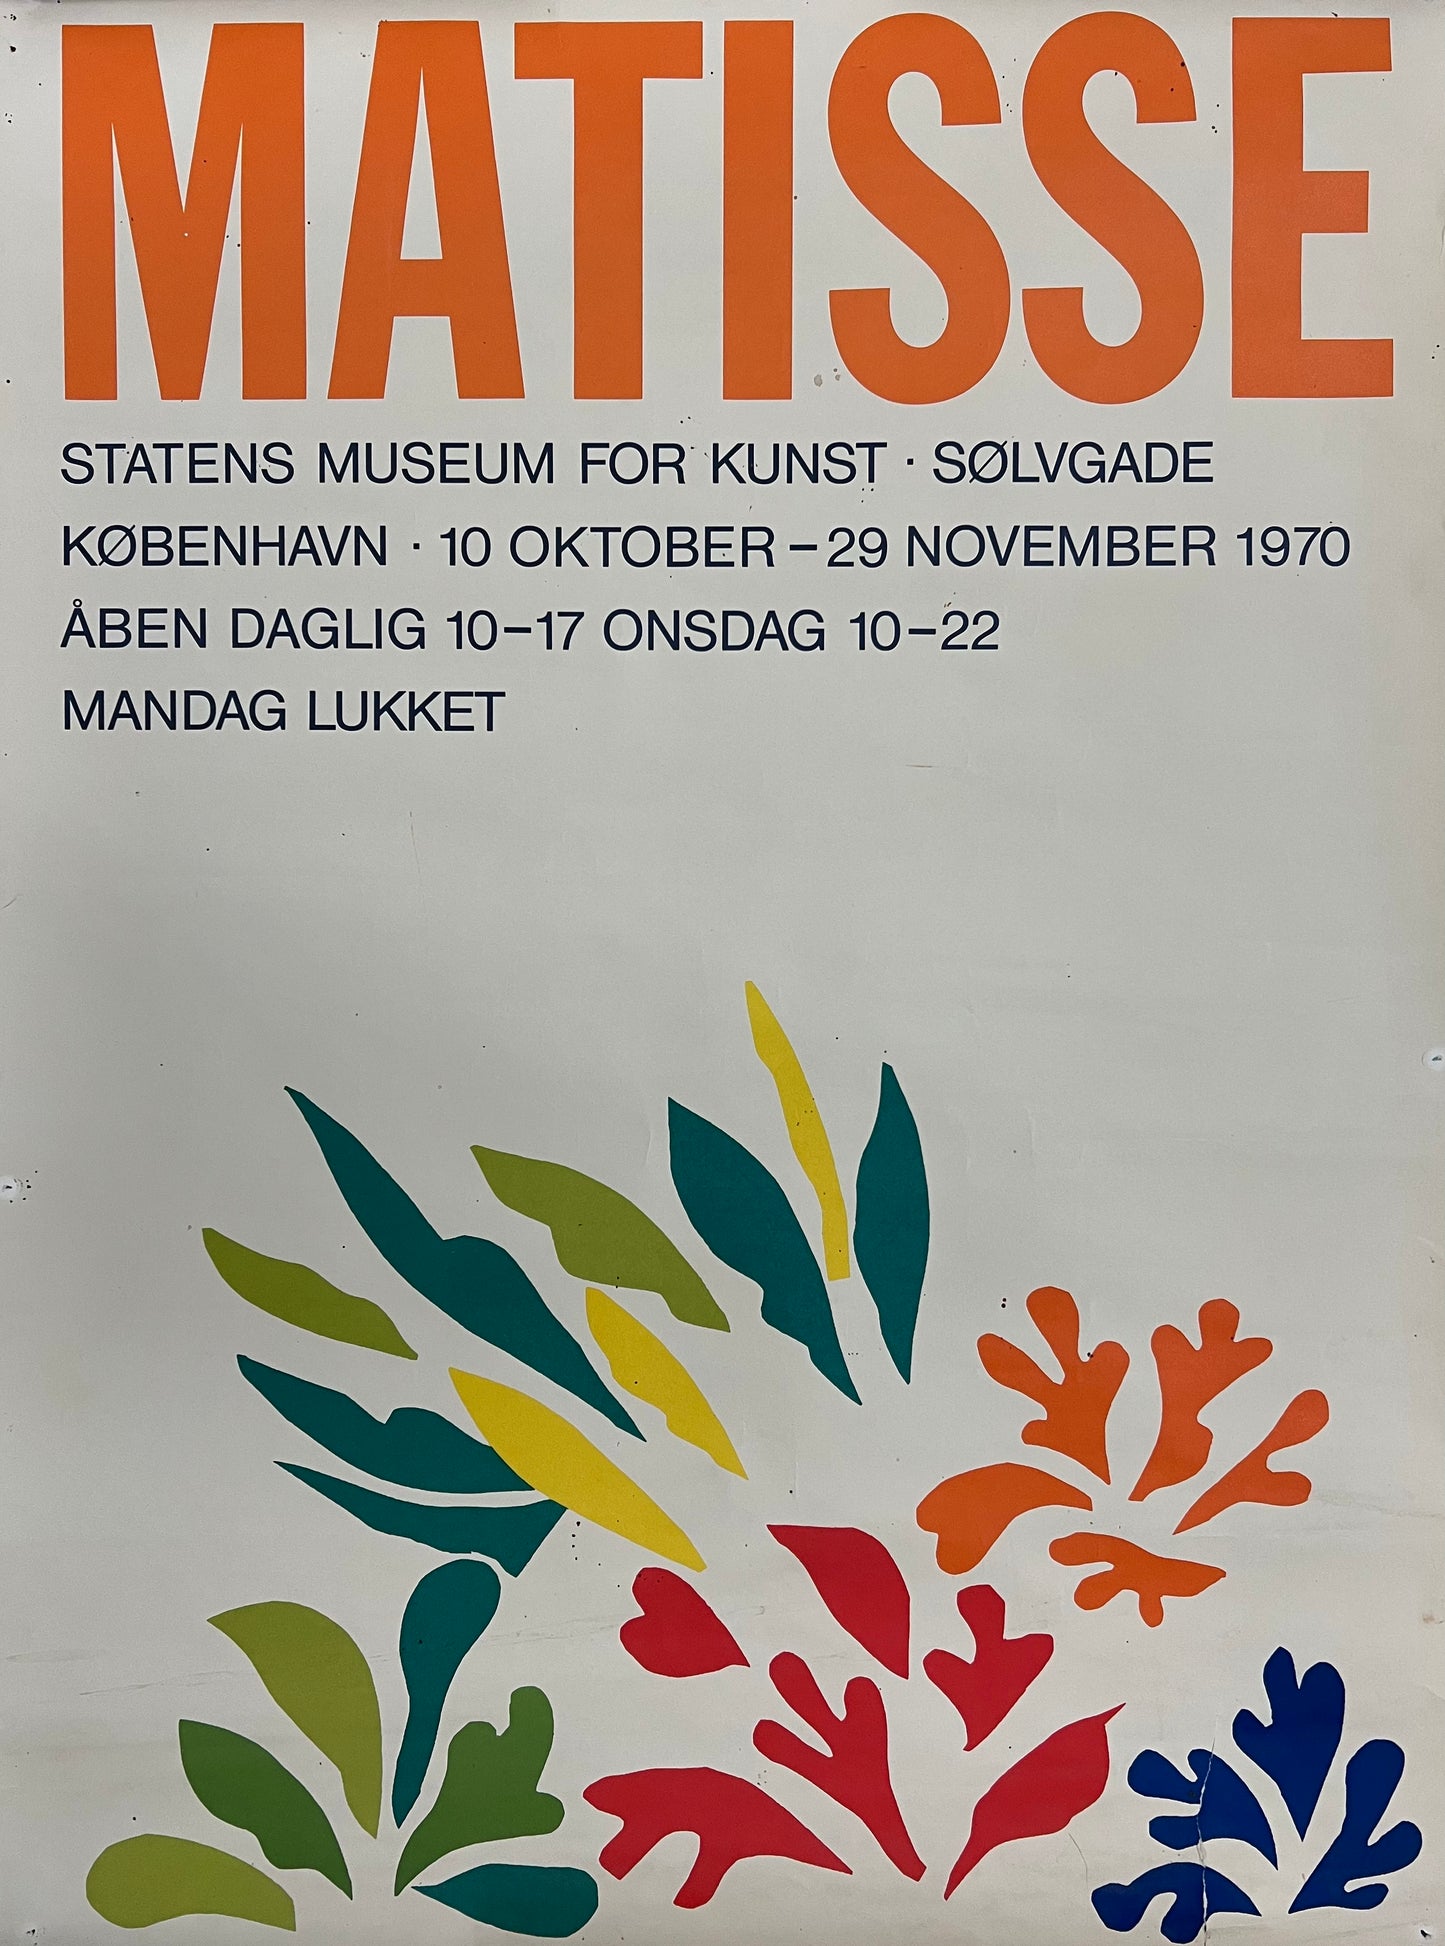 Henri Matisse. Exhibition poster, 1970